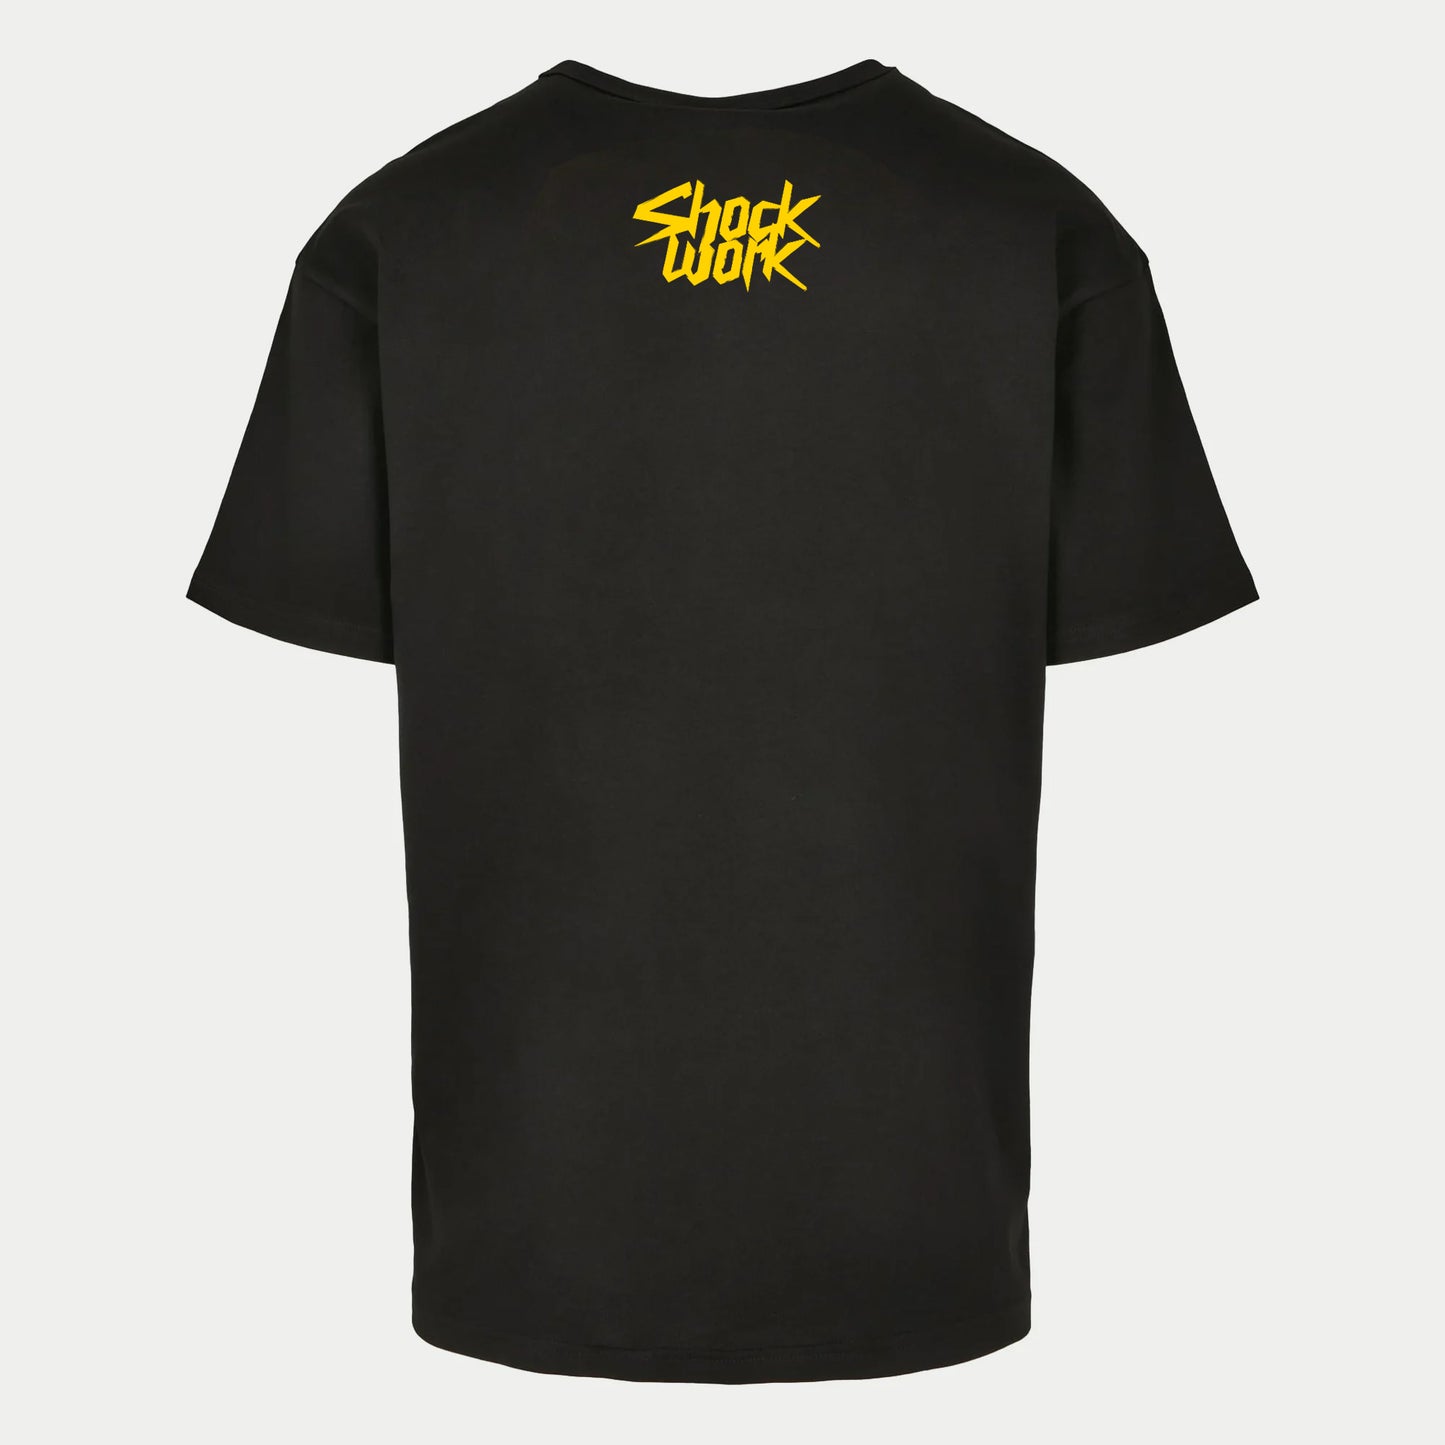 ShockWork T-Shirt Inverted